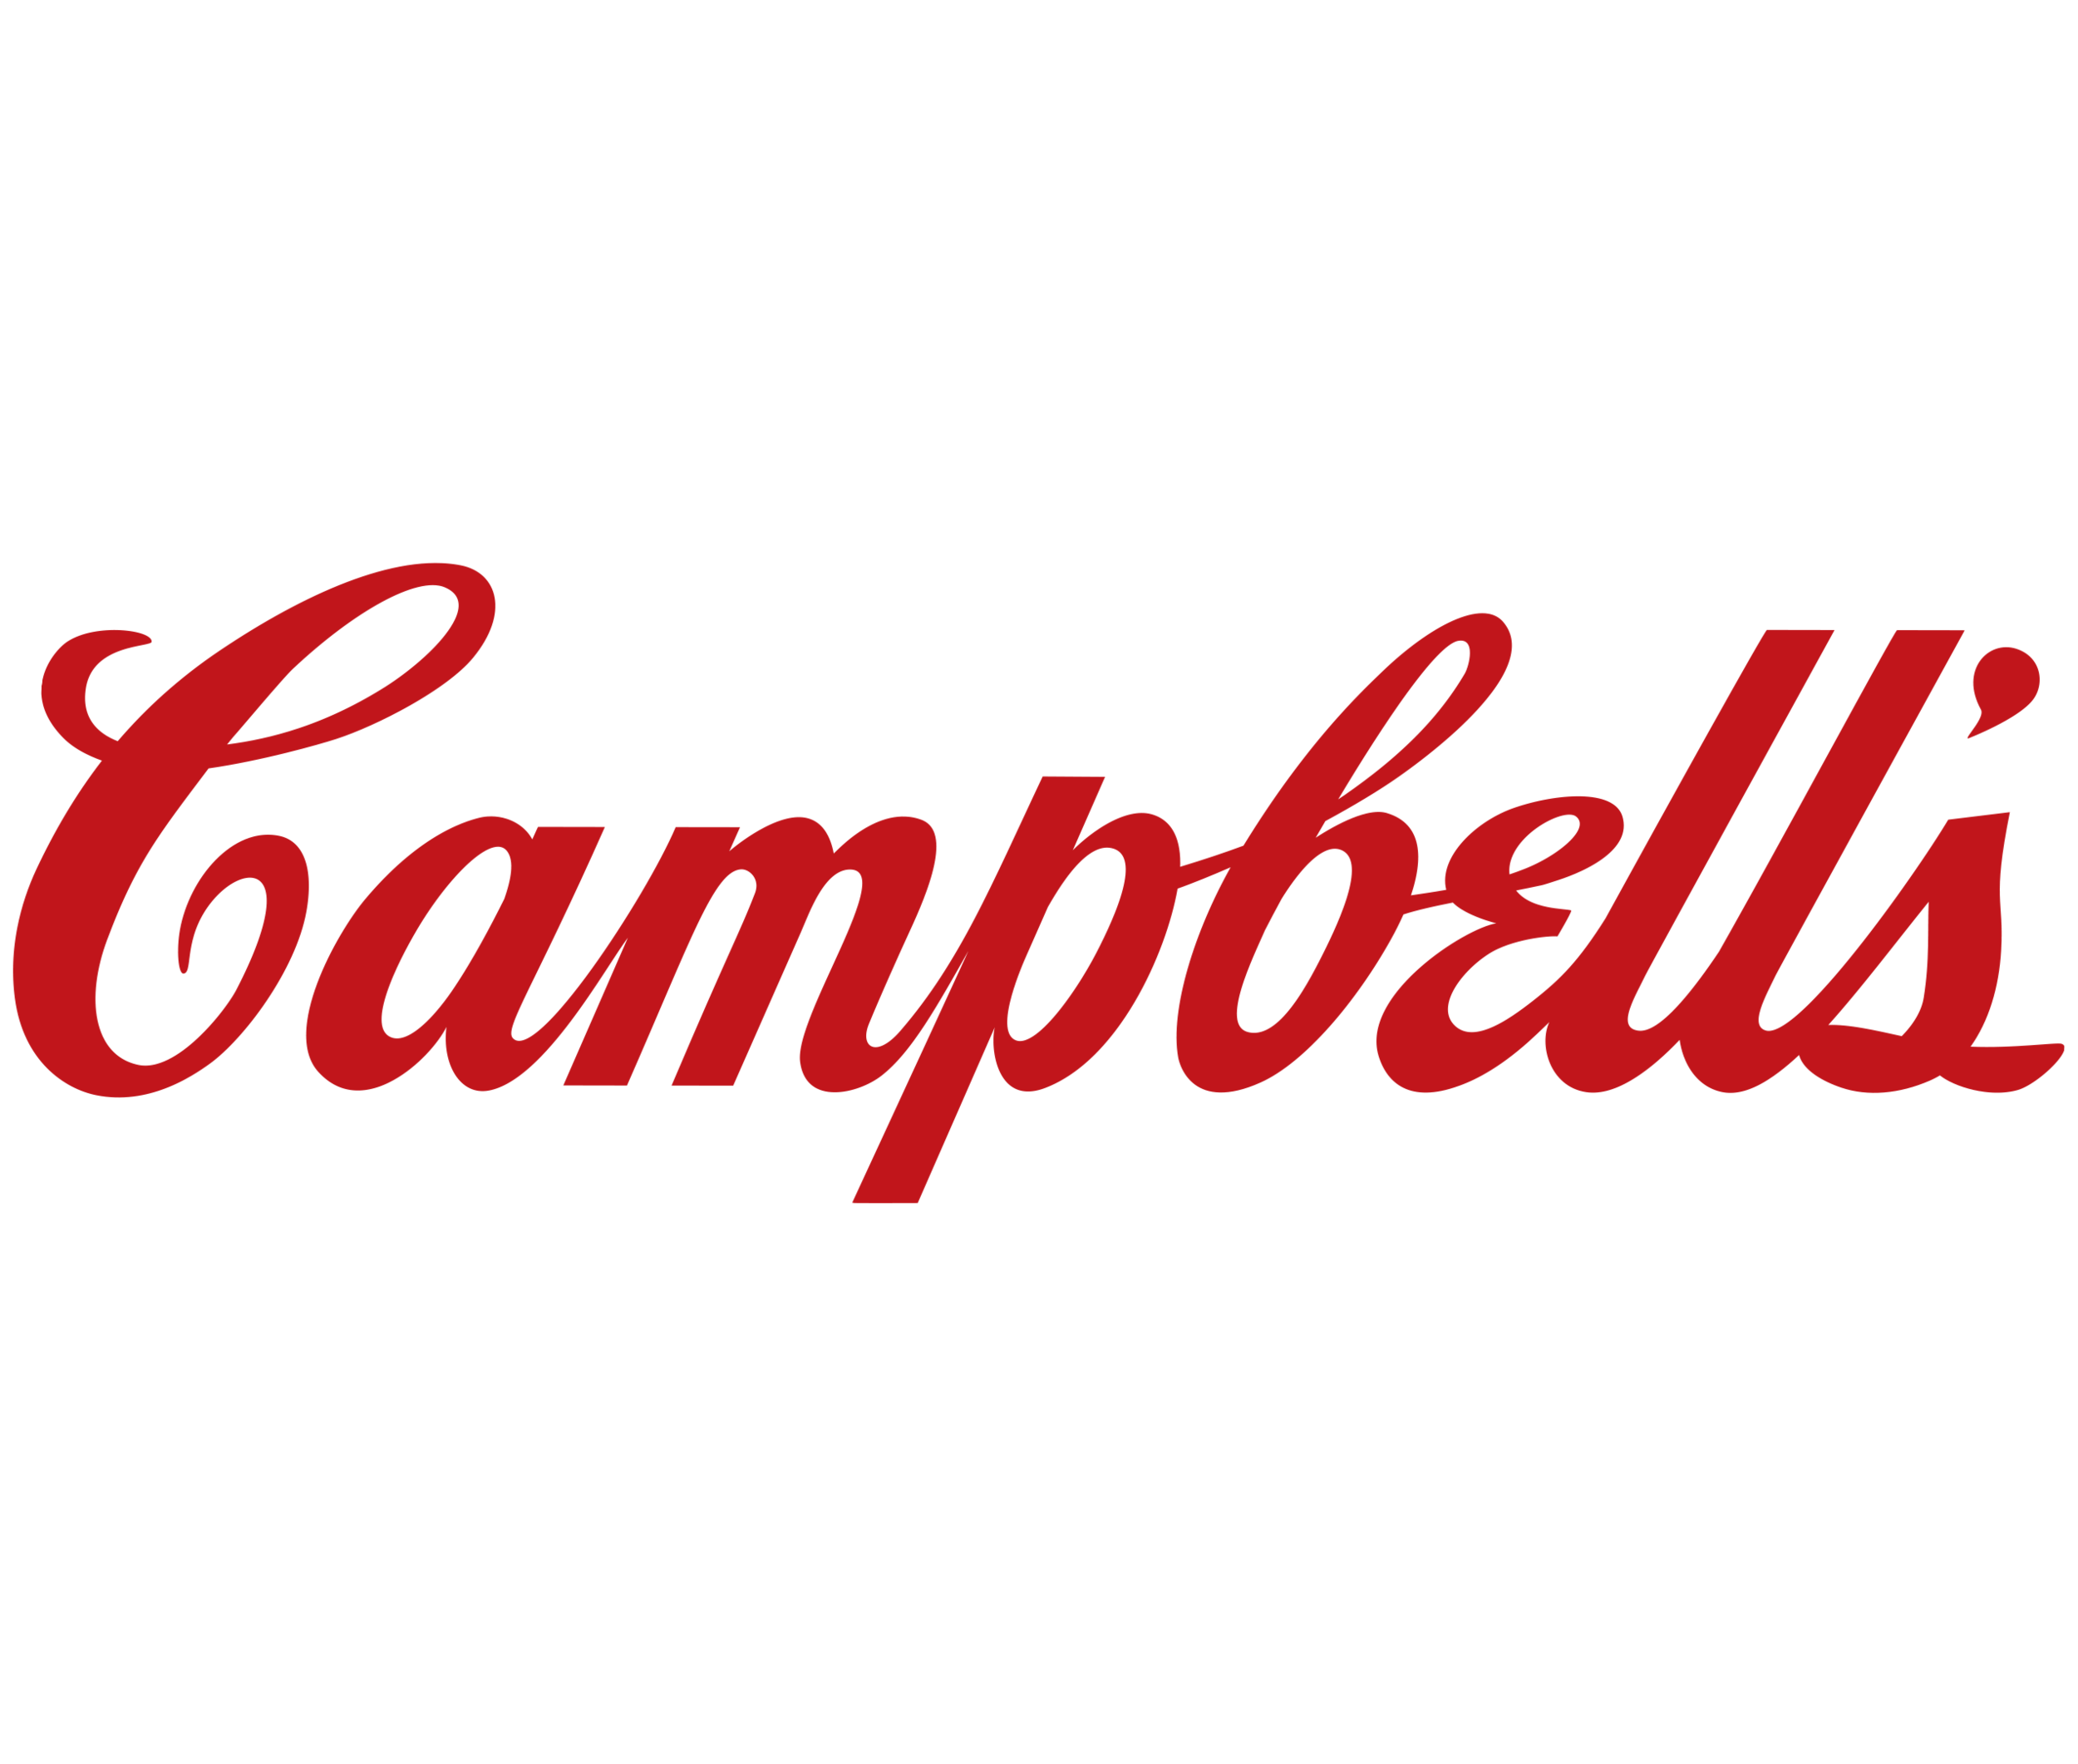 Campbells.png